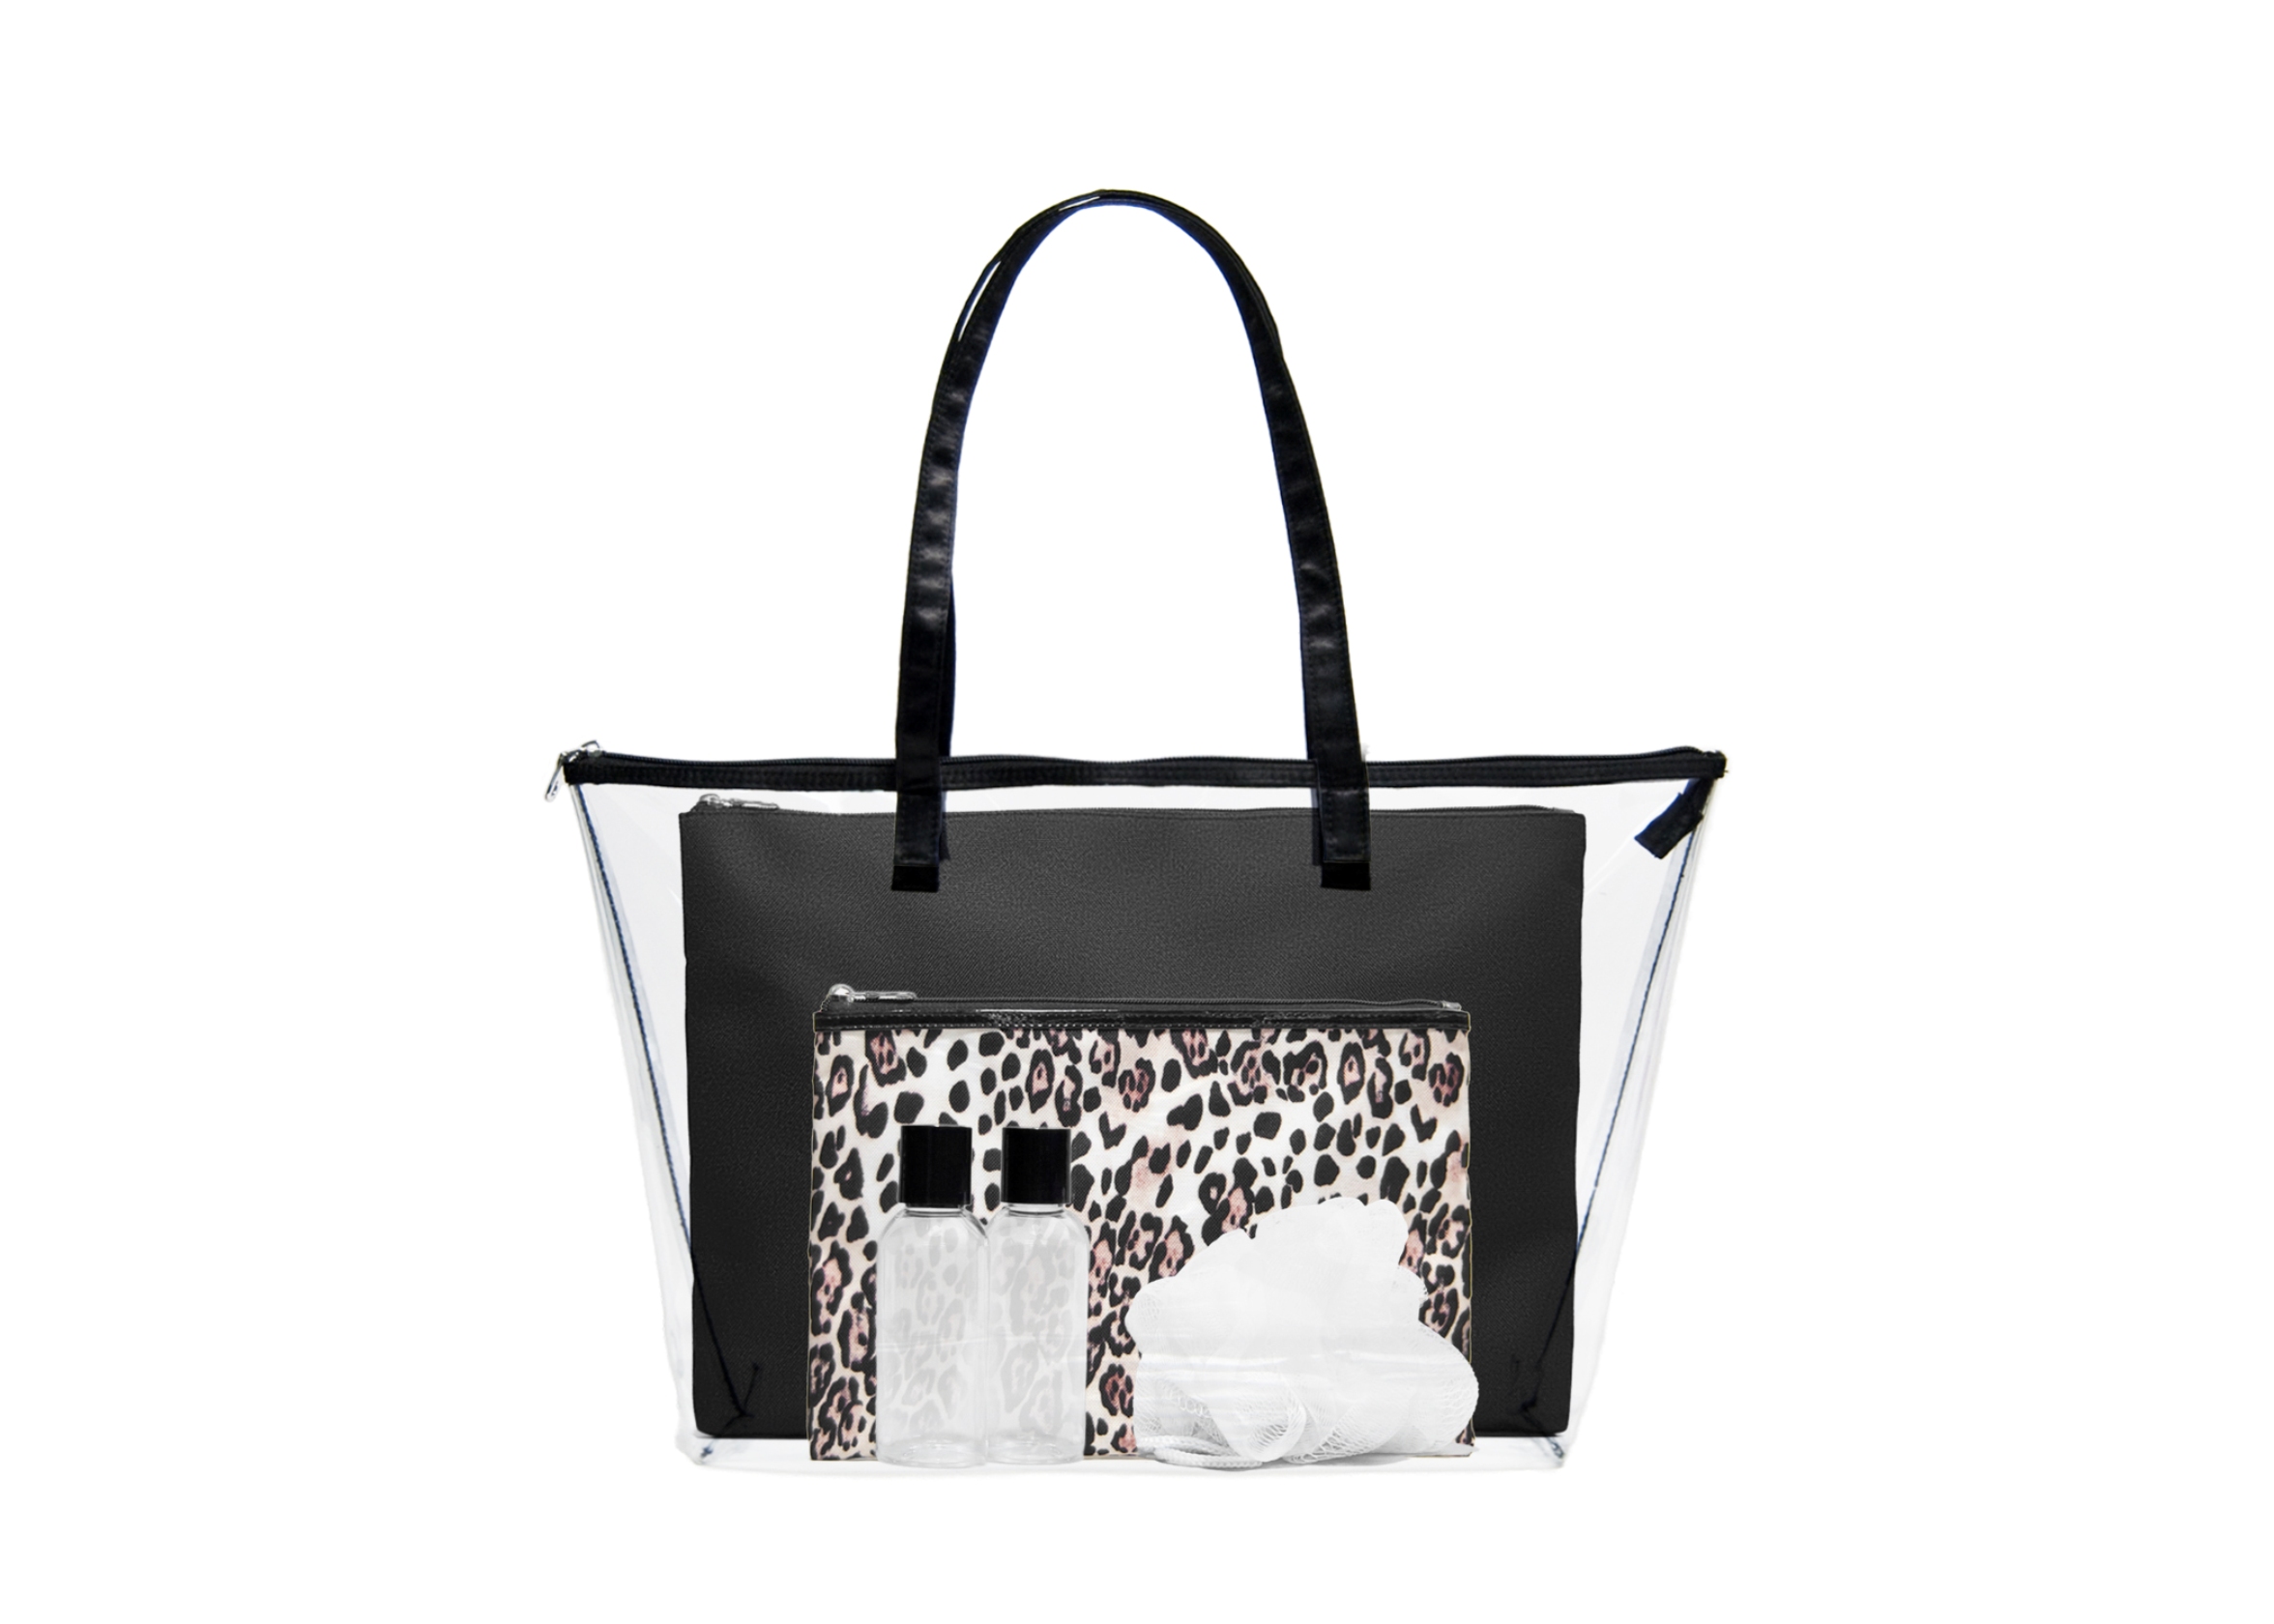 Blockbuster Black Cheetah Travel Tote Bag